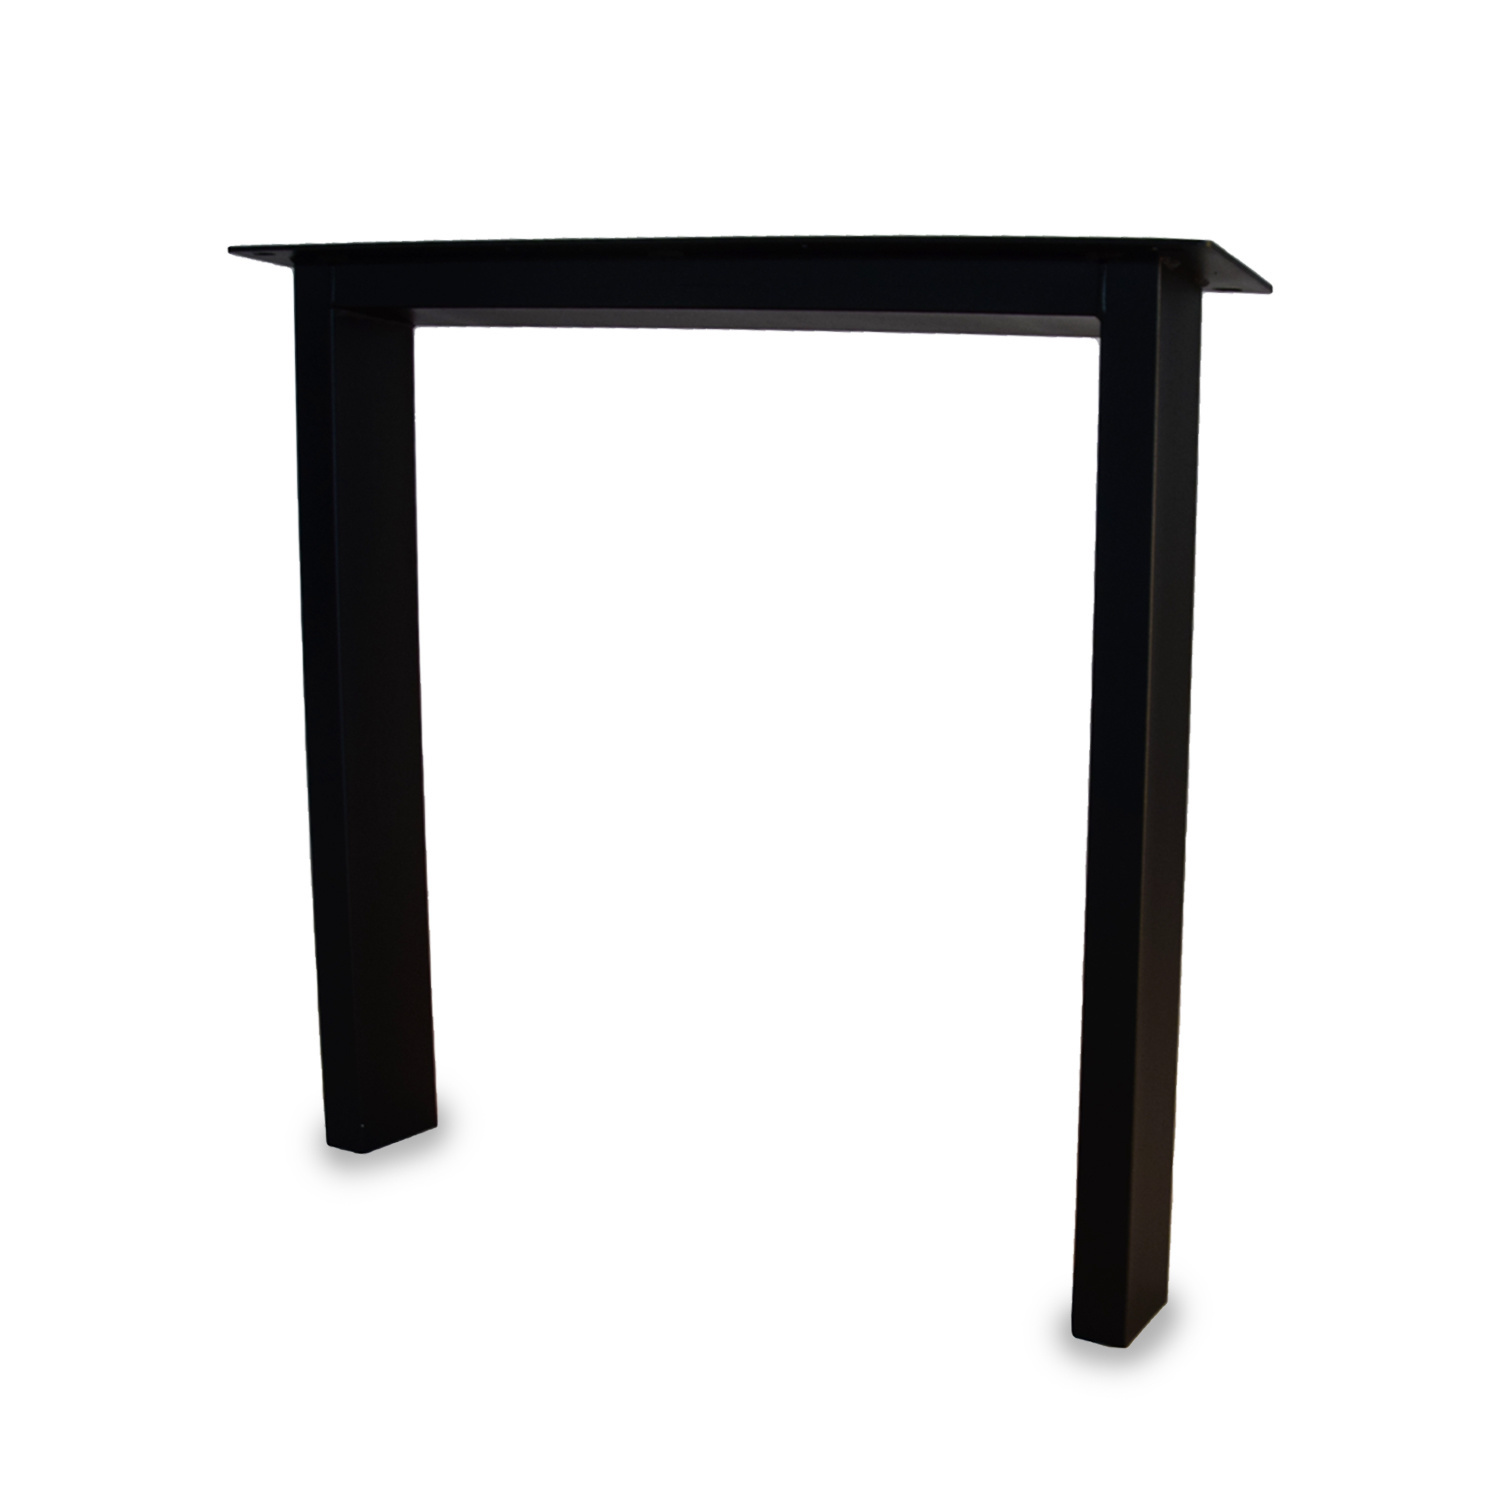  Tischbeine N Metall elegant SET (2 Stück) - 10x4 cm - 70-78 cm breit - 72 cm hoch - N-form Tischkufen / Tischgestell beschichtet - Schwarz